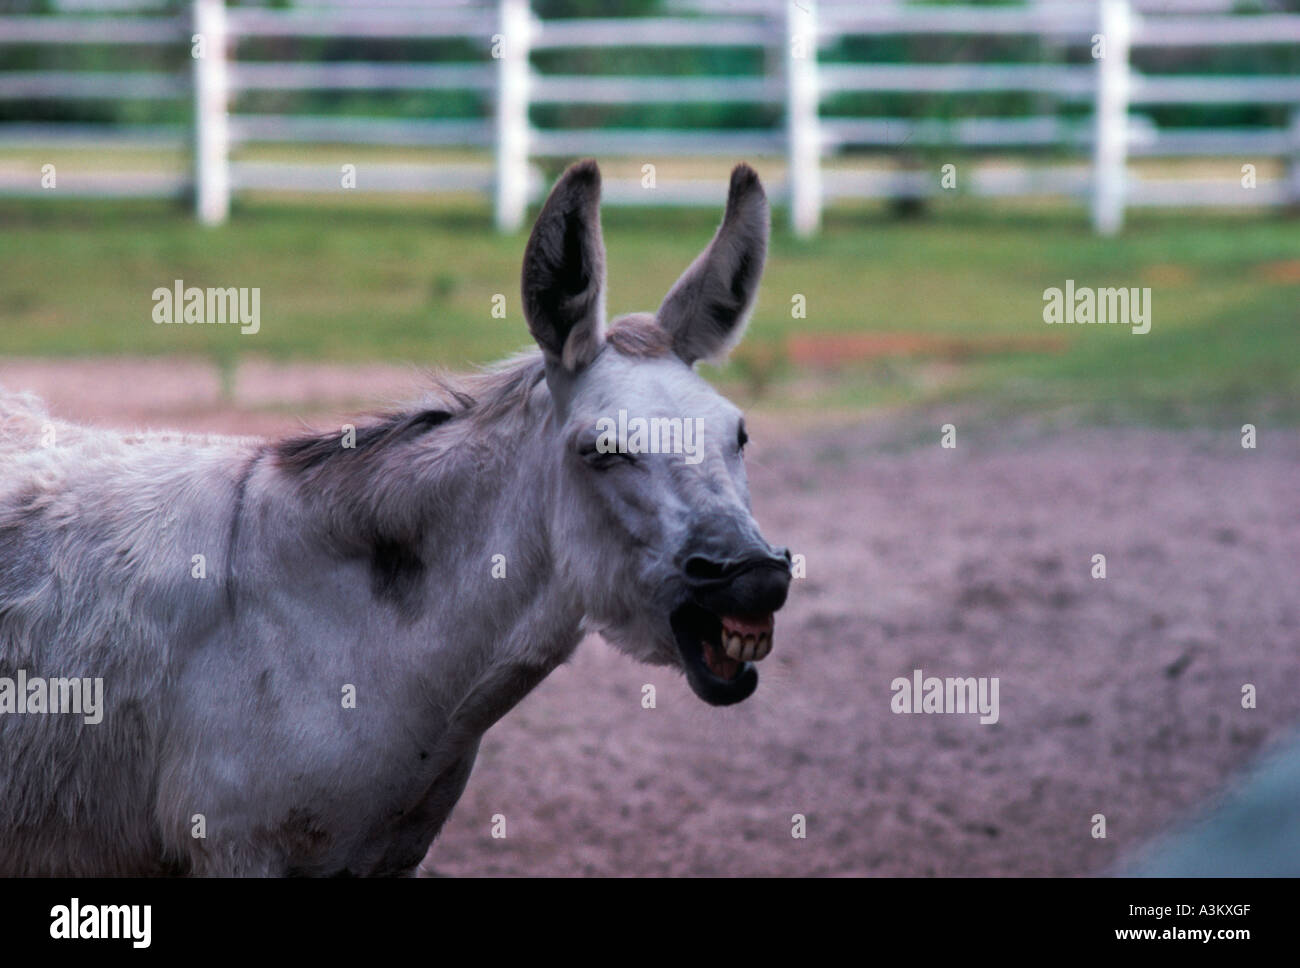 Donkey braying Stock Photo